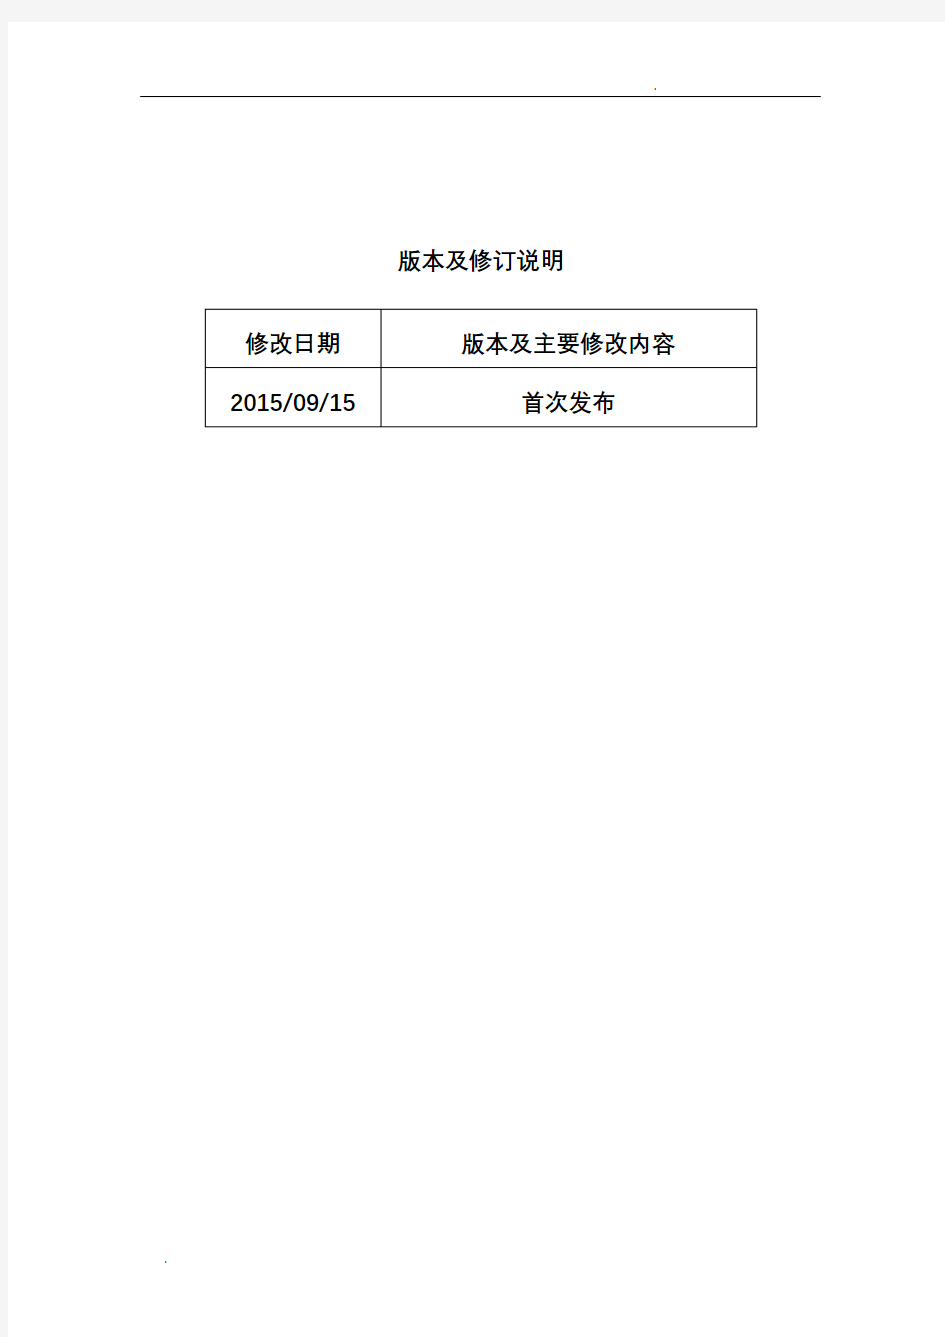 上海证券交易所公司债券预审核指南(一)申请文件及编制 